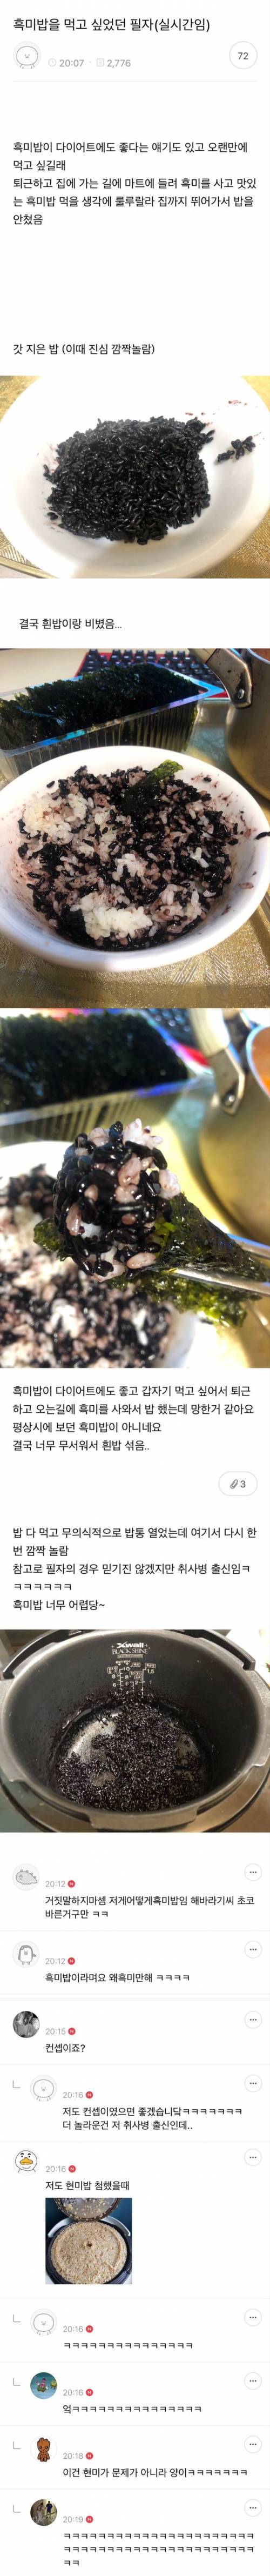 흑미밥 처음 만들어본 사람 대참사.jpg